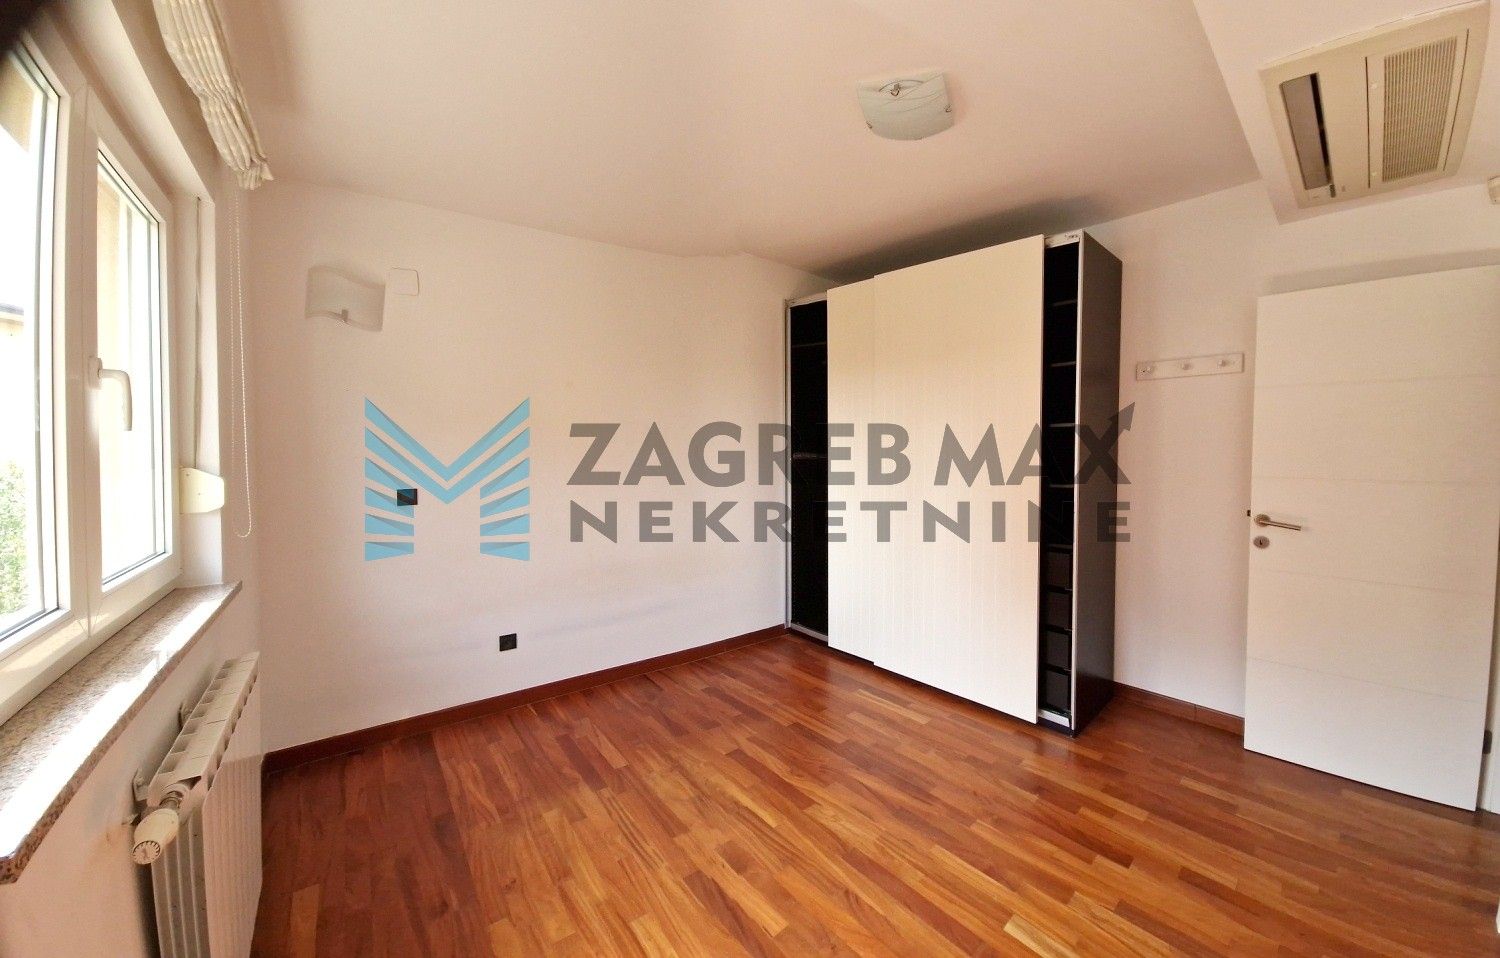 Zagreb - GORNJI BUKOVAC - moderan, 4-sob. stan, odmah useljiv, BEZ PROVIZIJE